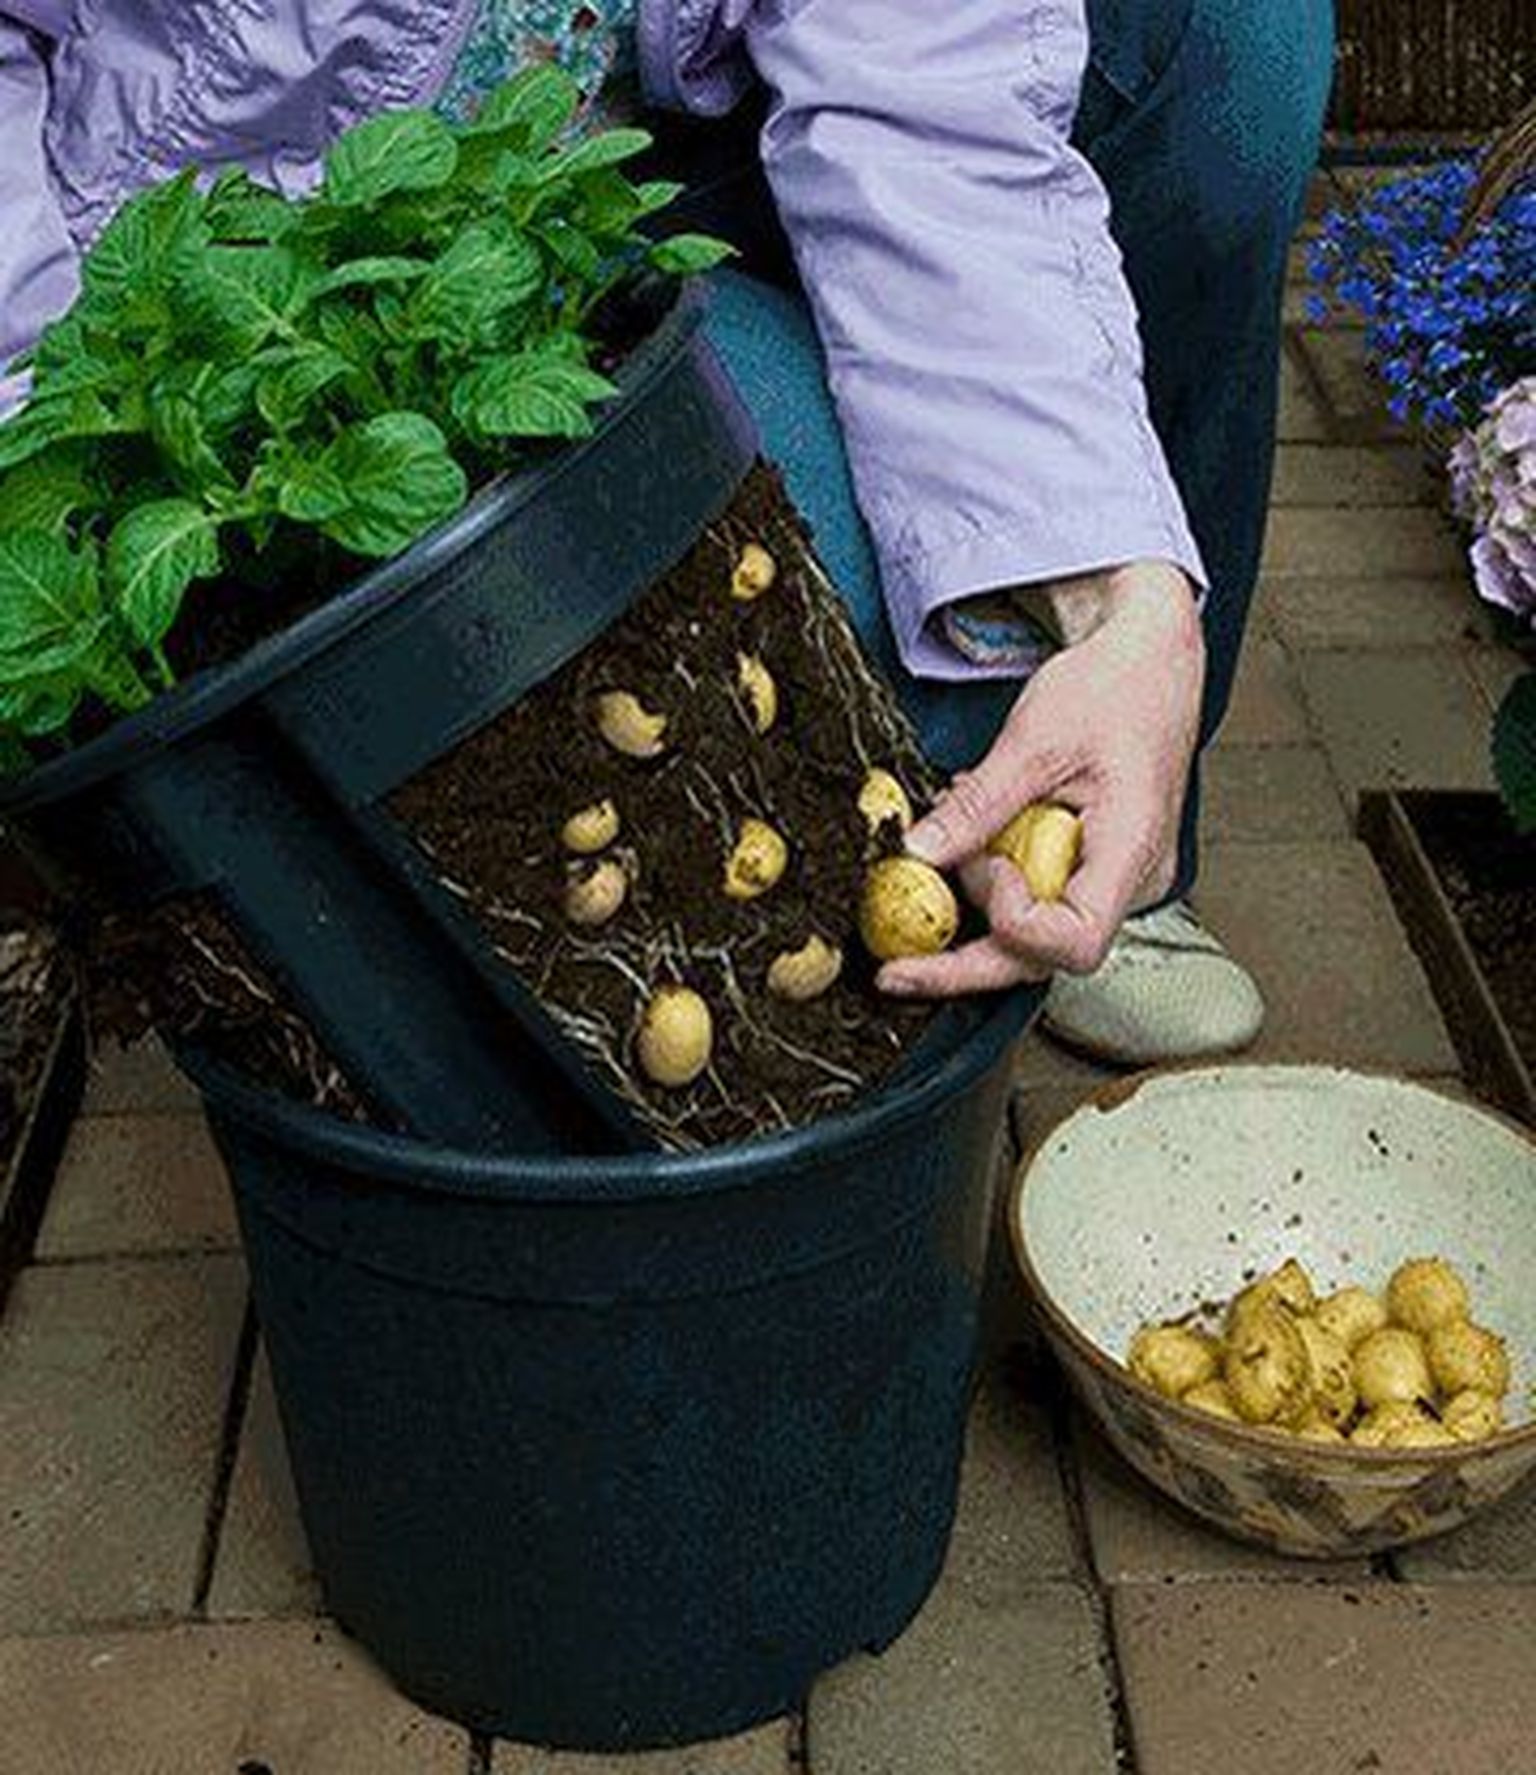 Sel kevadel on vahetatakse sotsiaalmeedias agaralt soovitust, kuidas kartulit kasvatada kahe poti sees. Sisemisel on küljed osaliselt ära lõigatud ja nii saab suuremad kartulid vahepeal ära noppida ja taim kasvab ikka edasi.